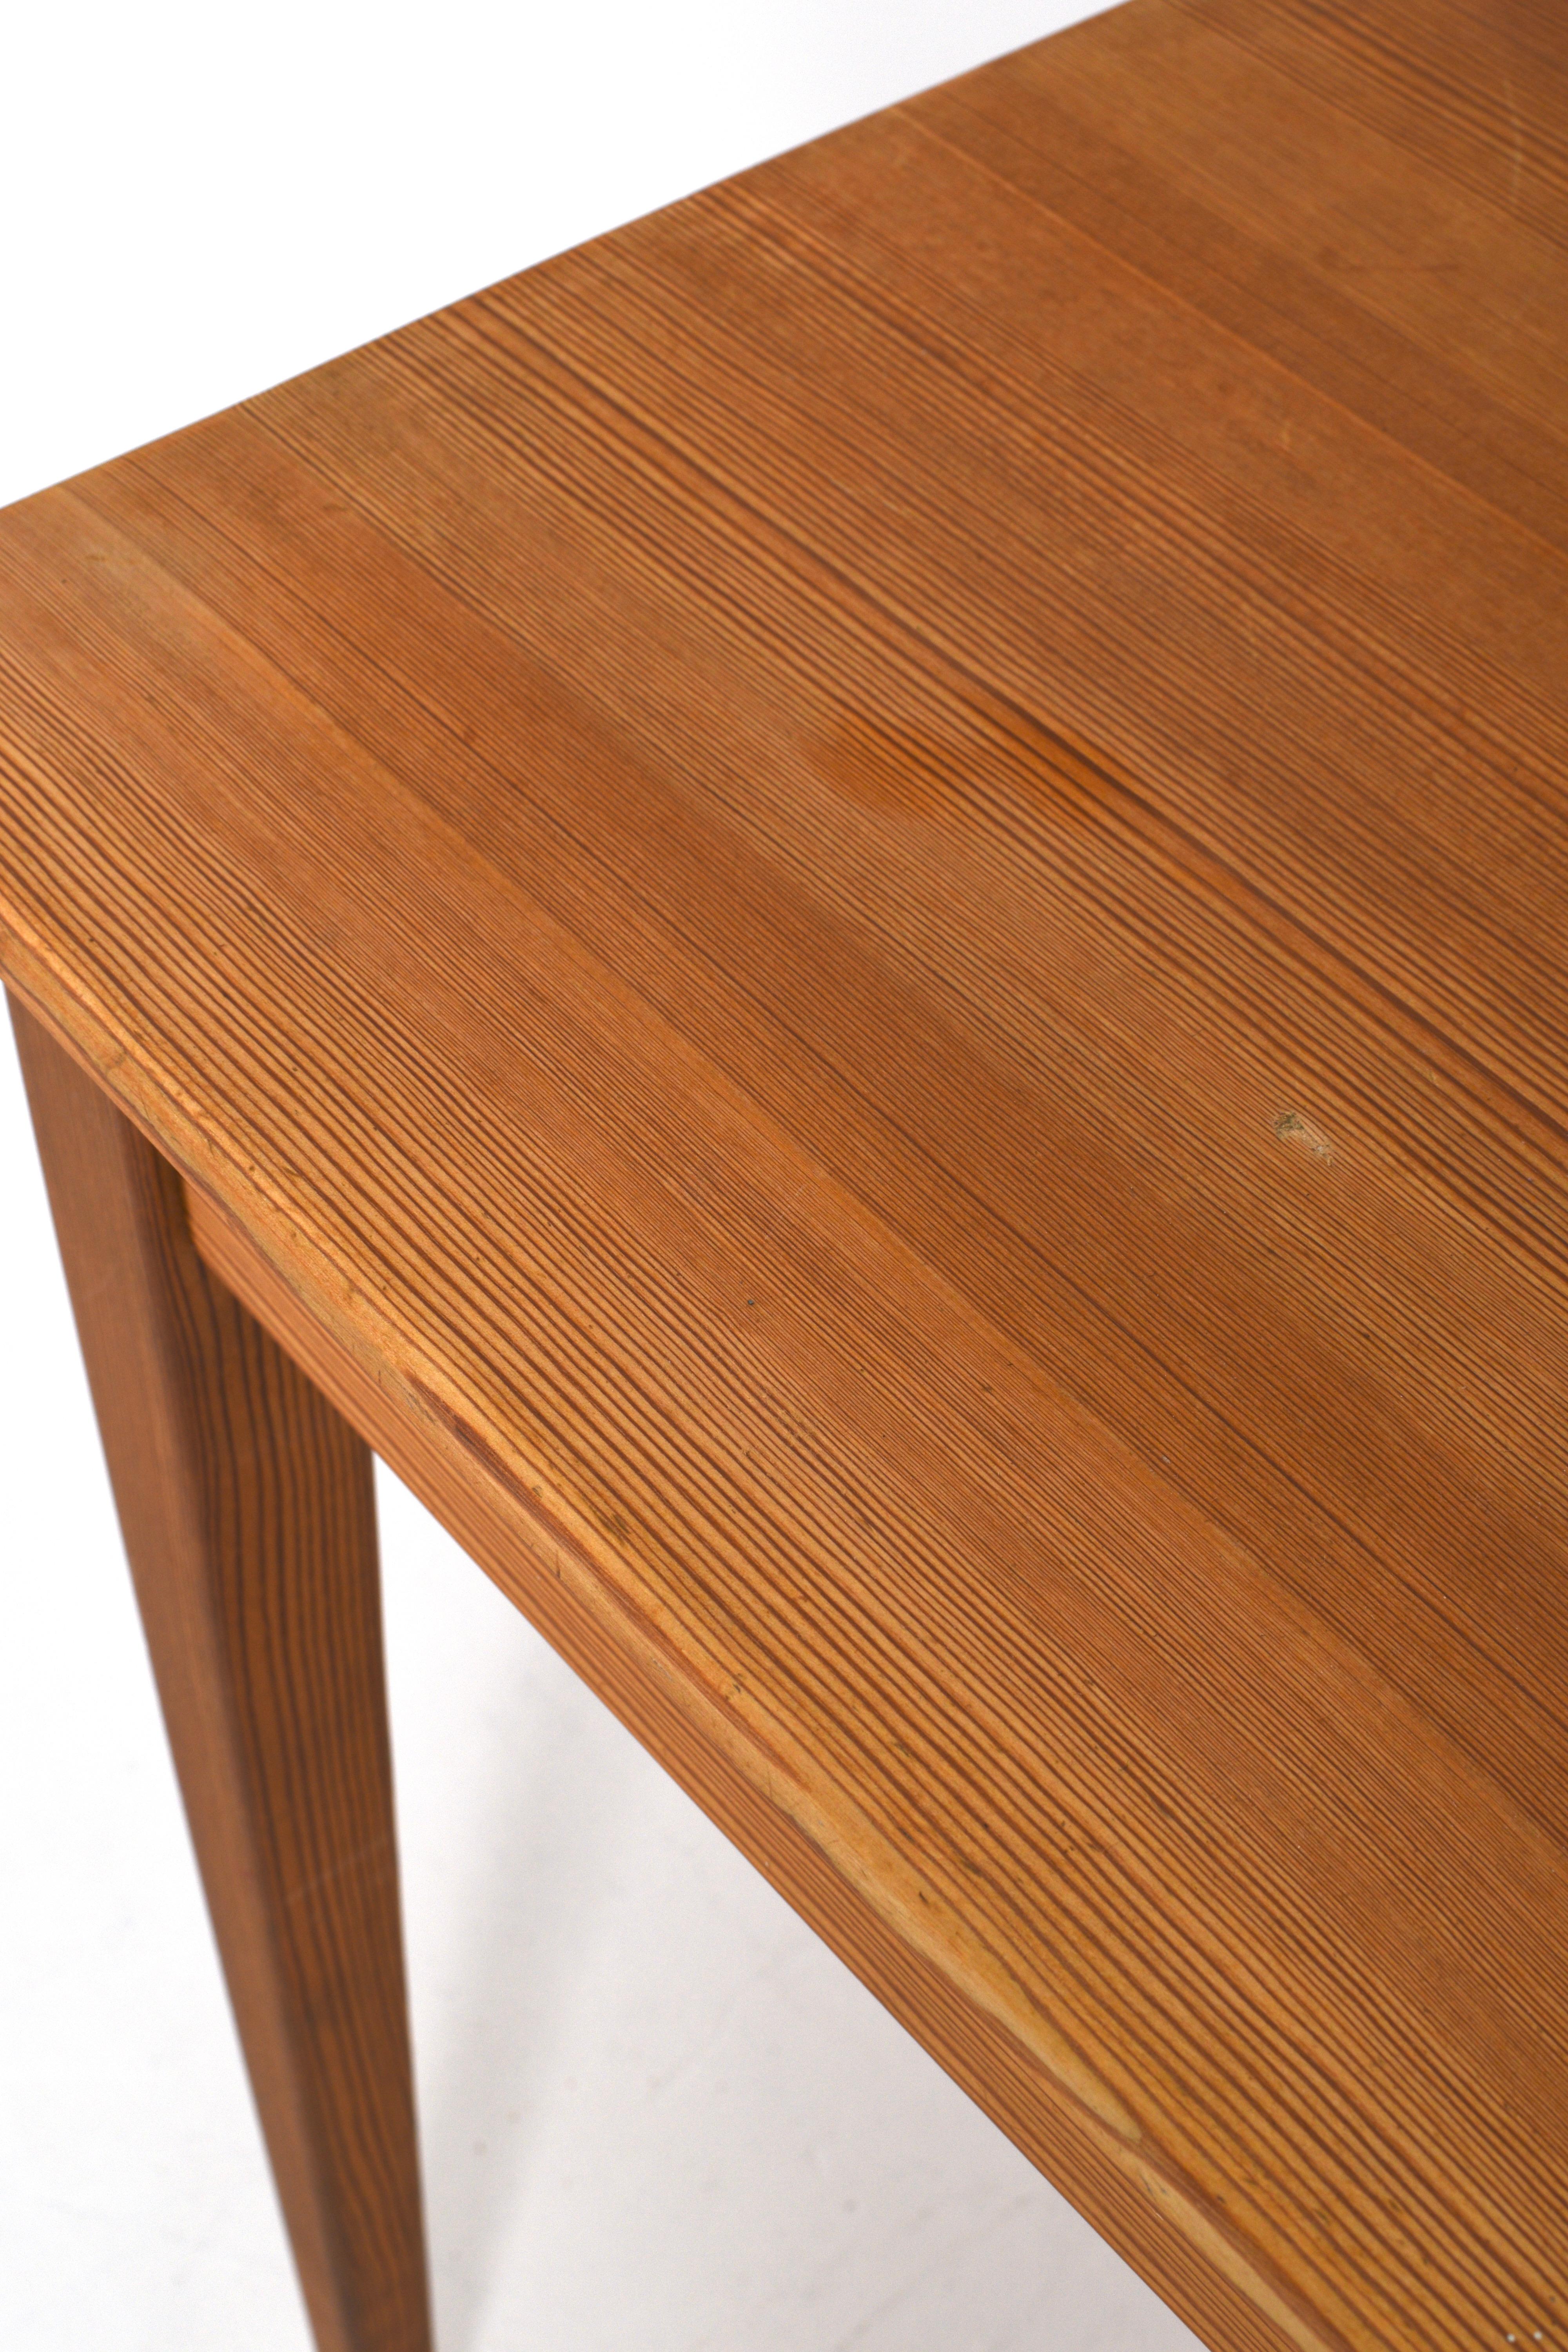 Desk Fryklund in pine by Carl Malmsten For Sale 2